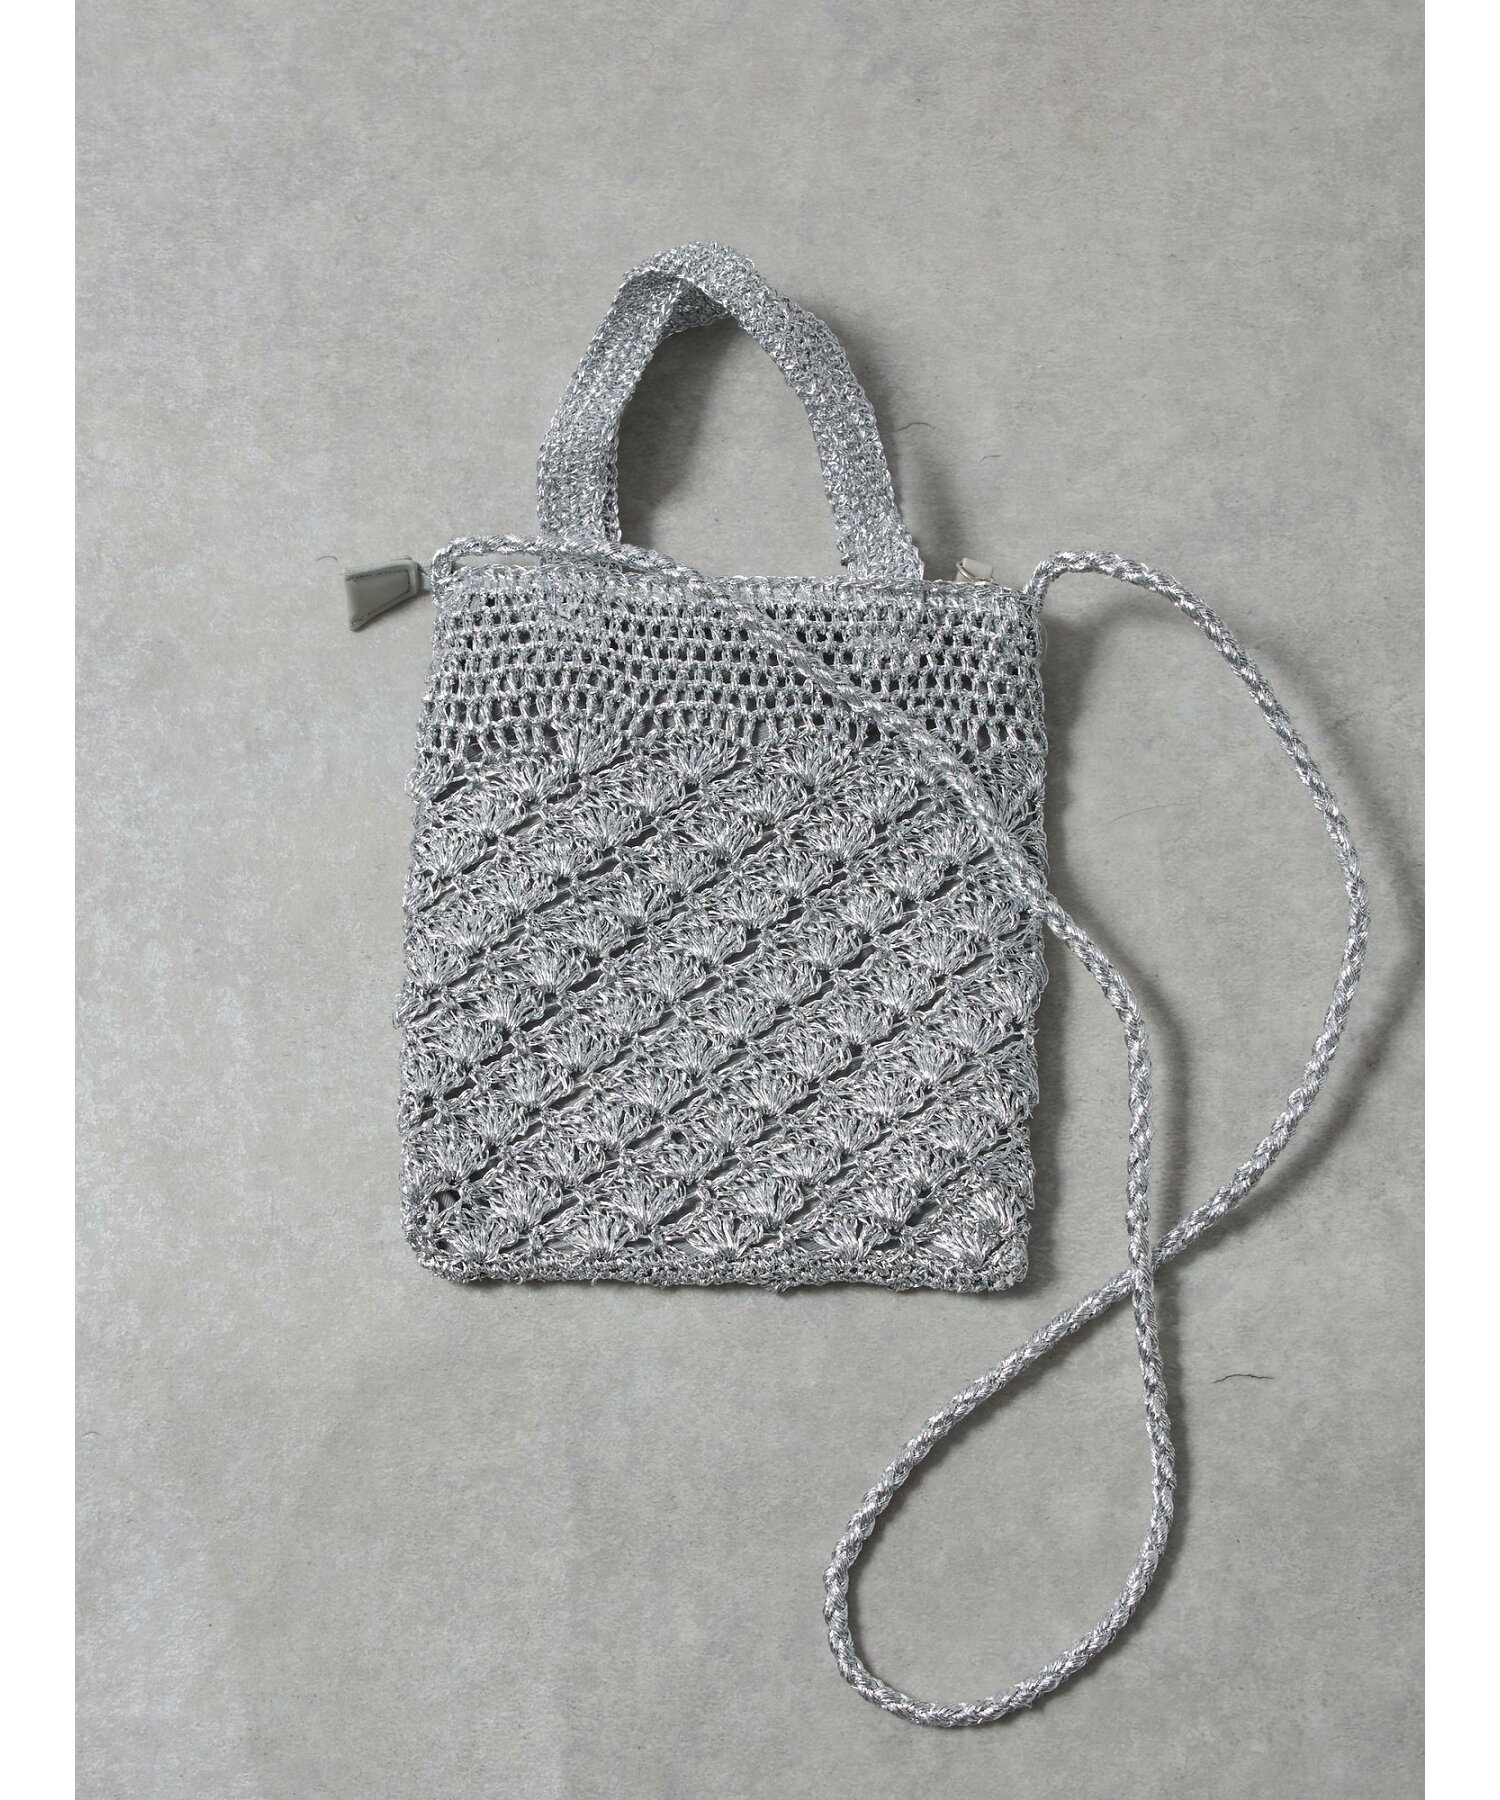 メタリック柄編みミニショルダーバッグ